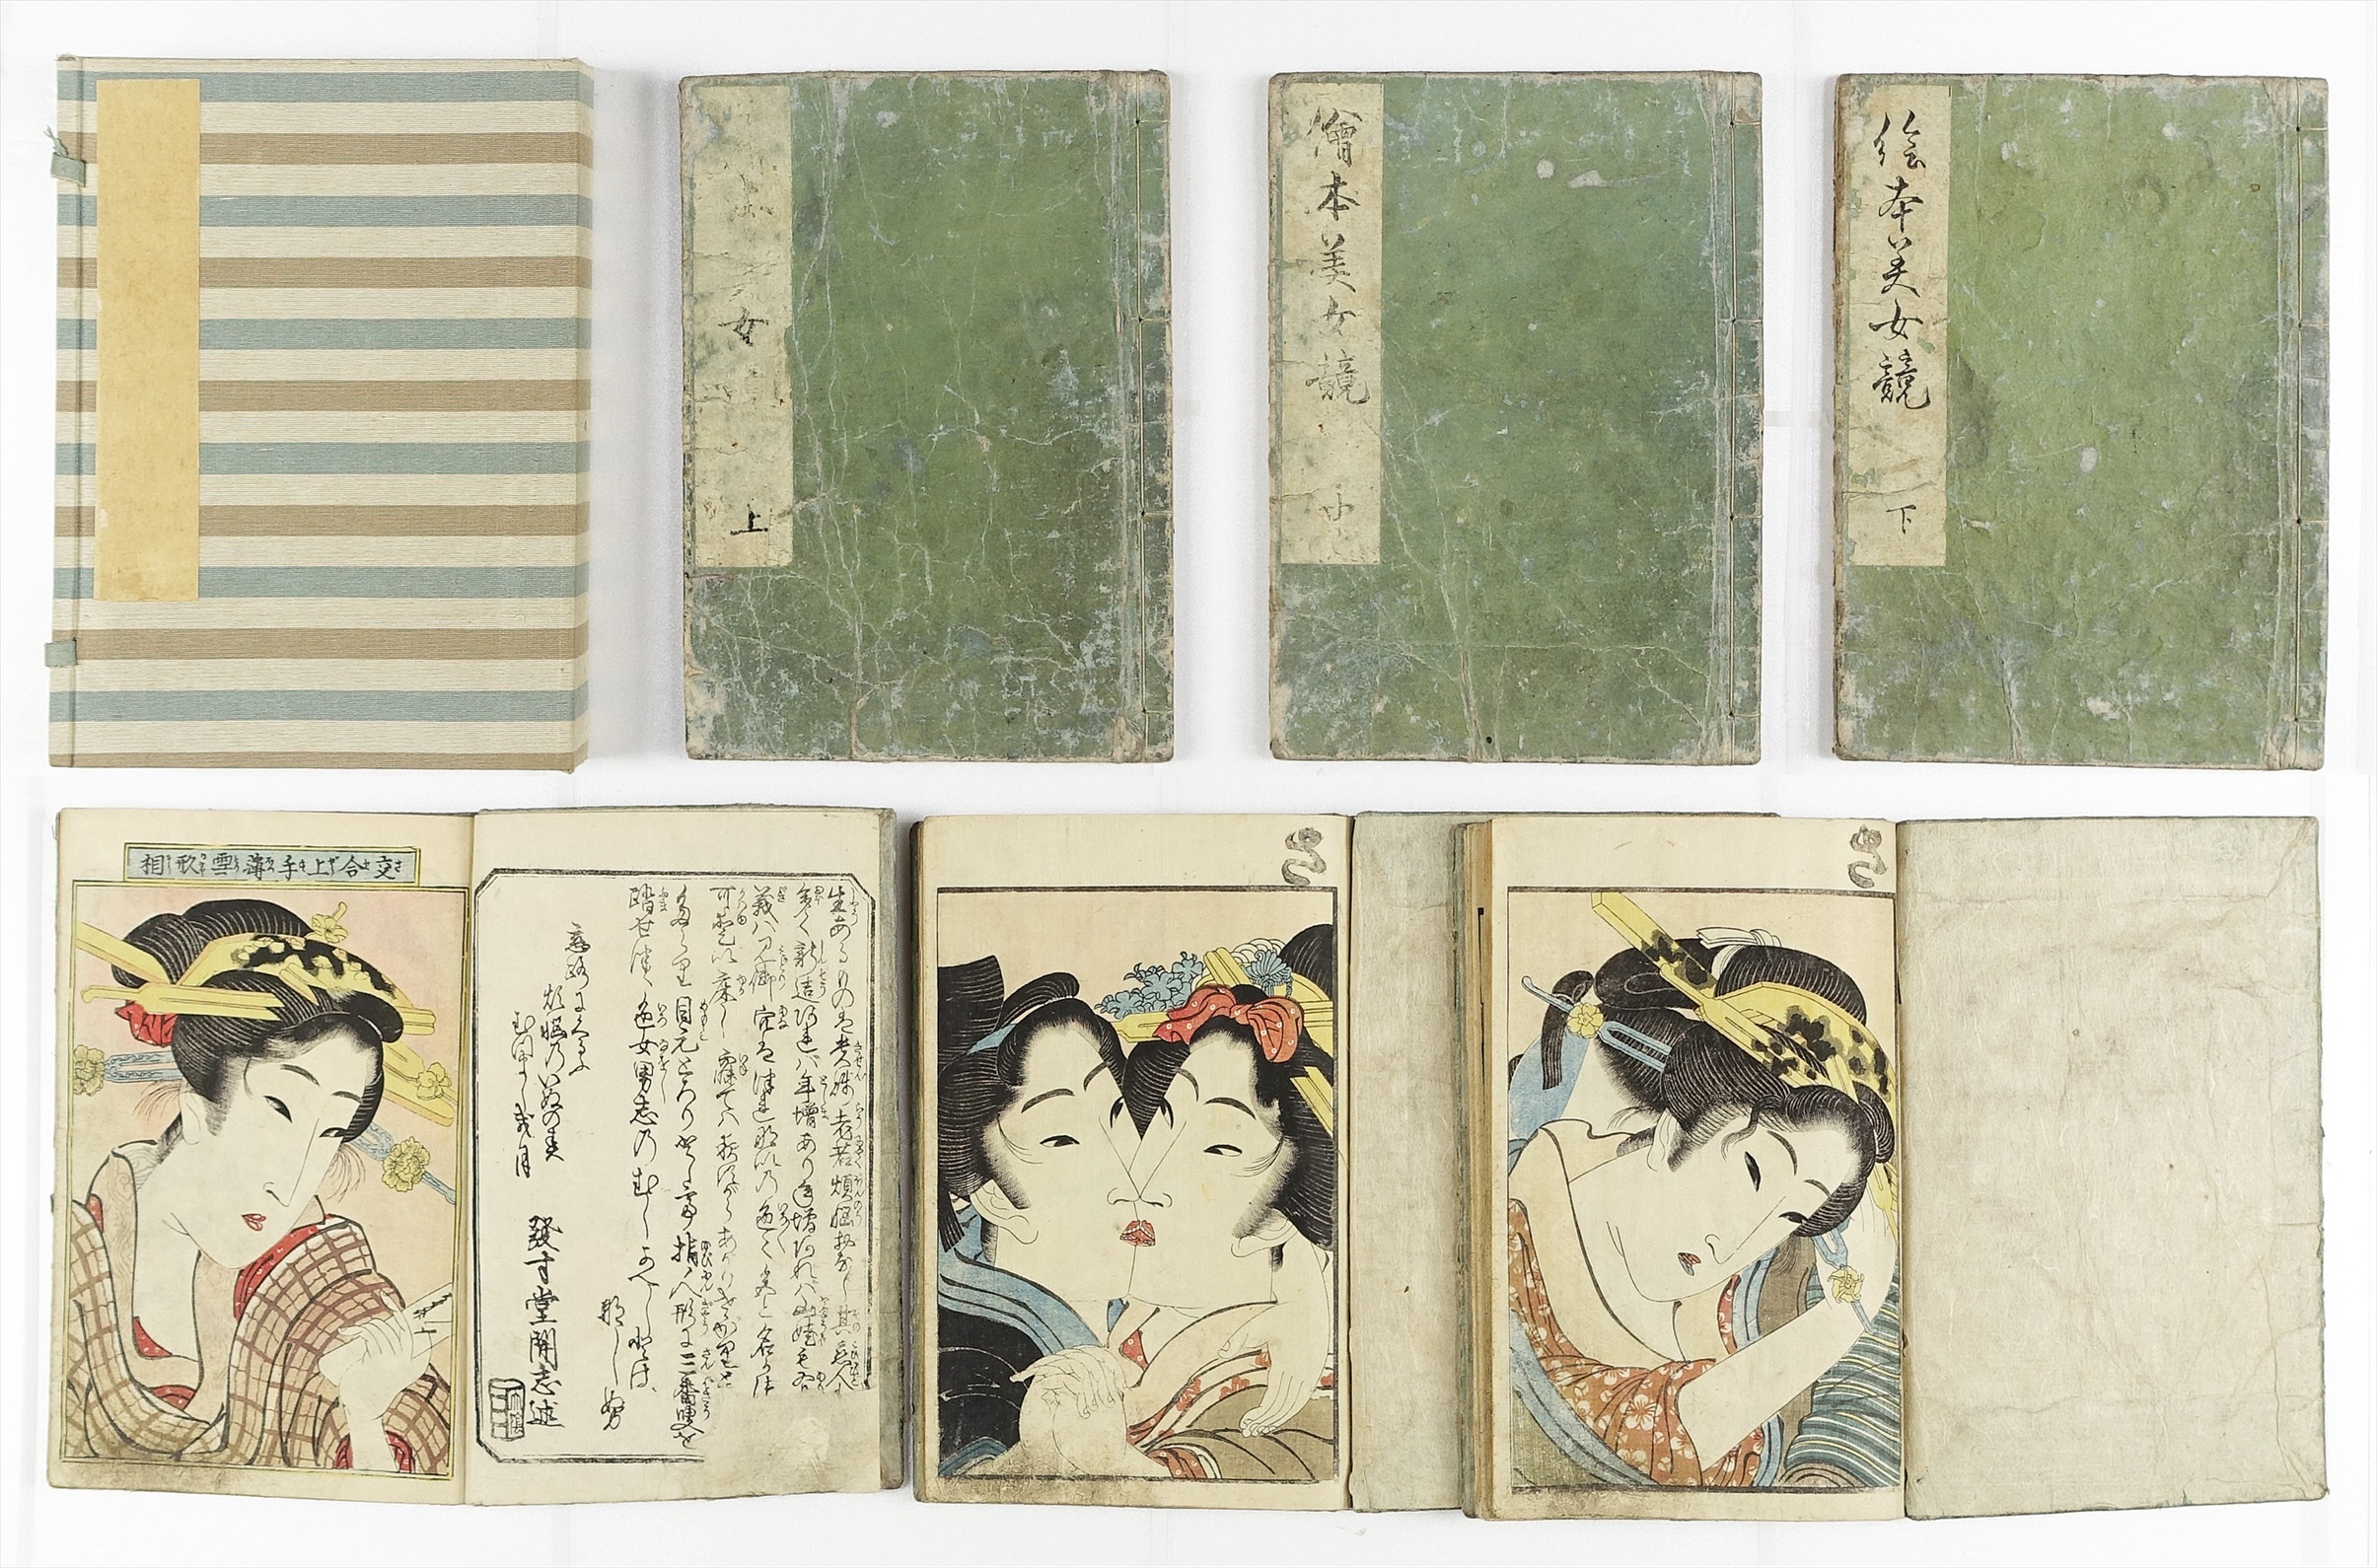 販売純正浮世絵〜妖艶な日本女性の美しさを映した逸品 アート・デザイン・音楽